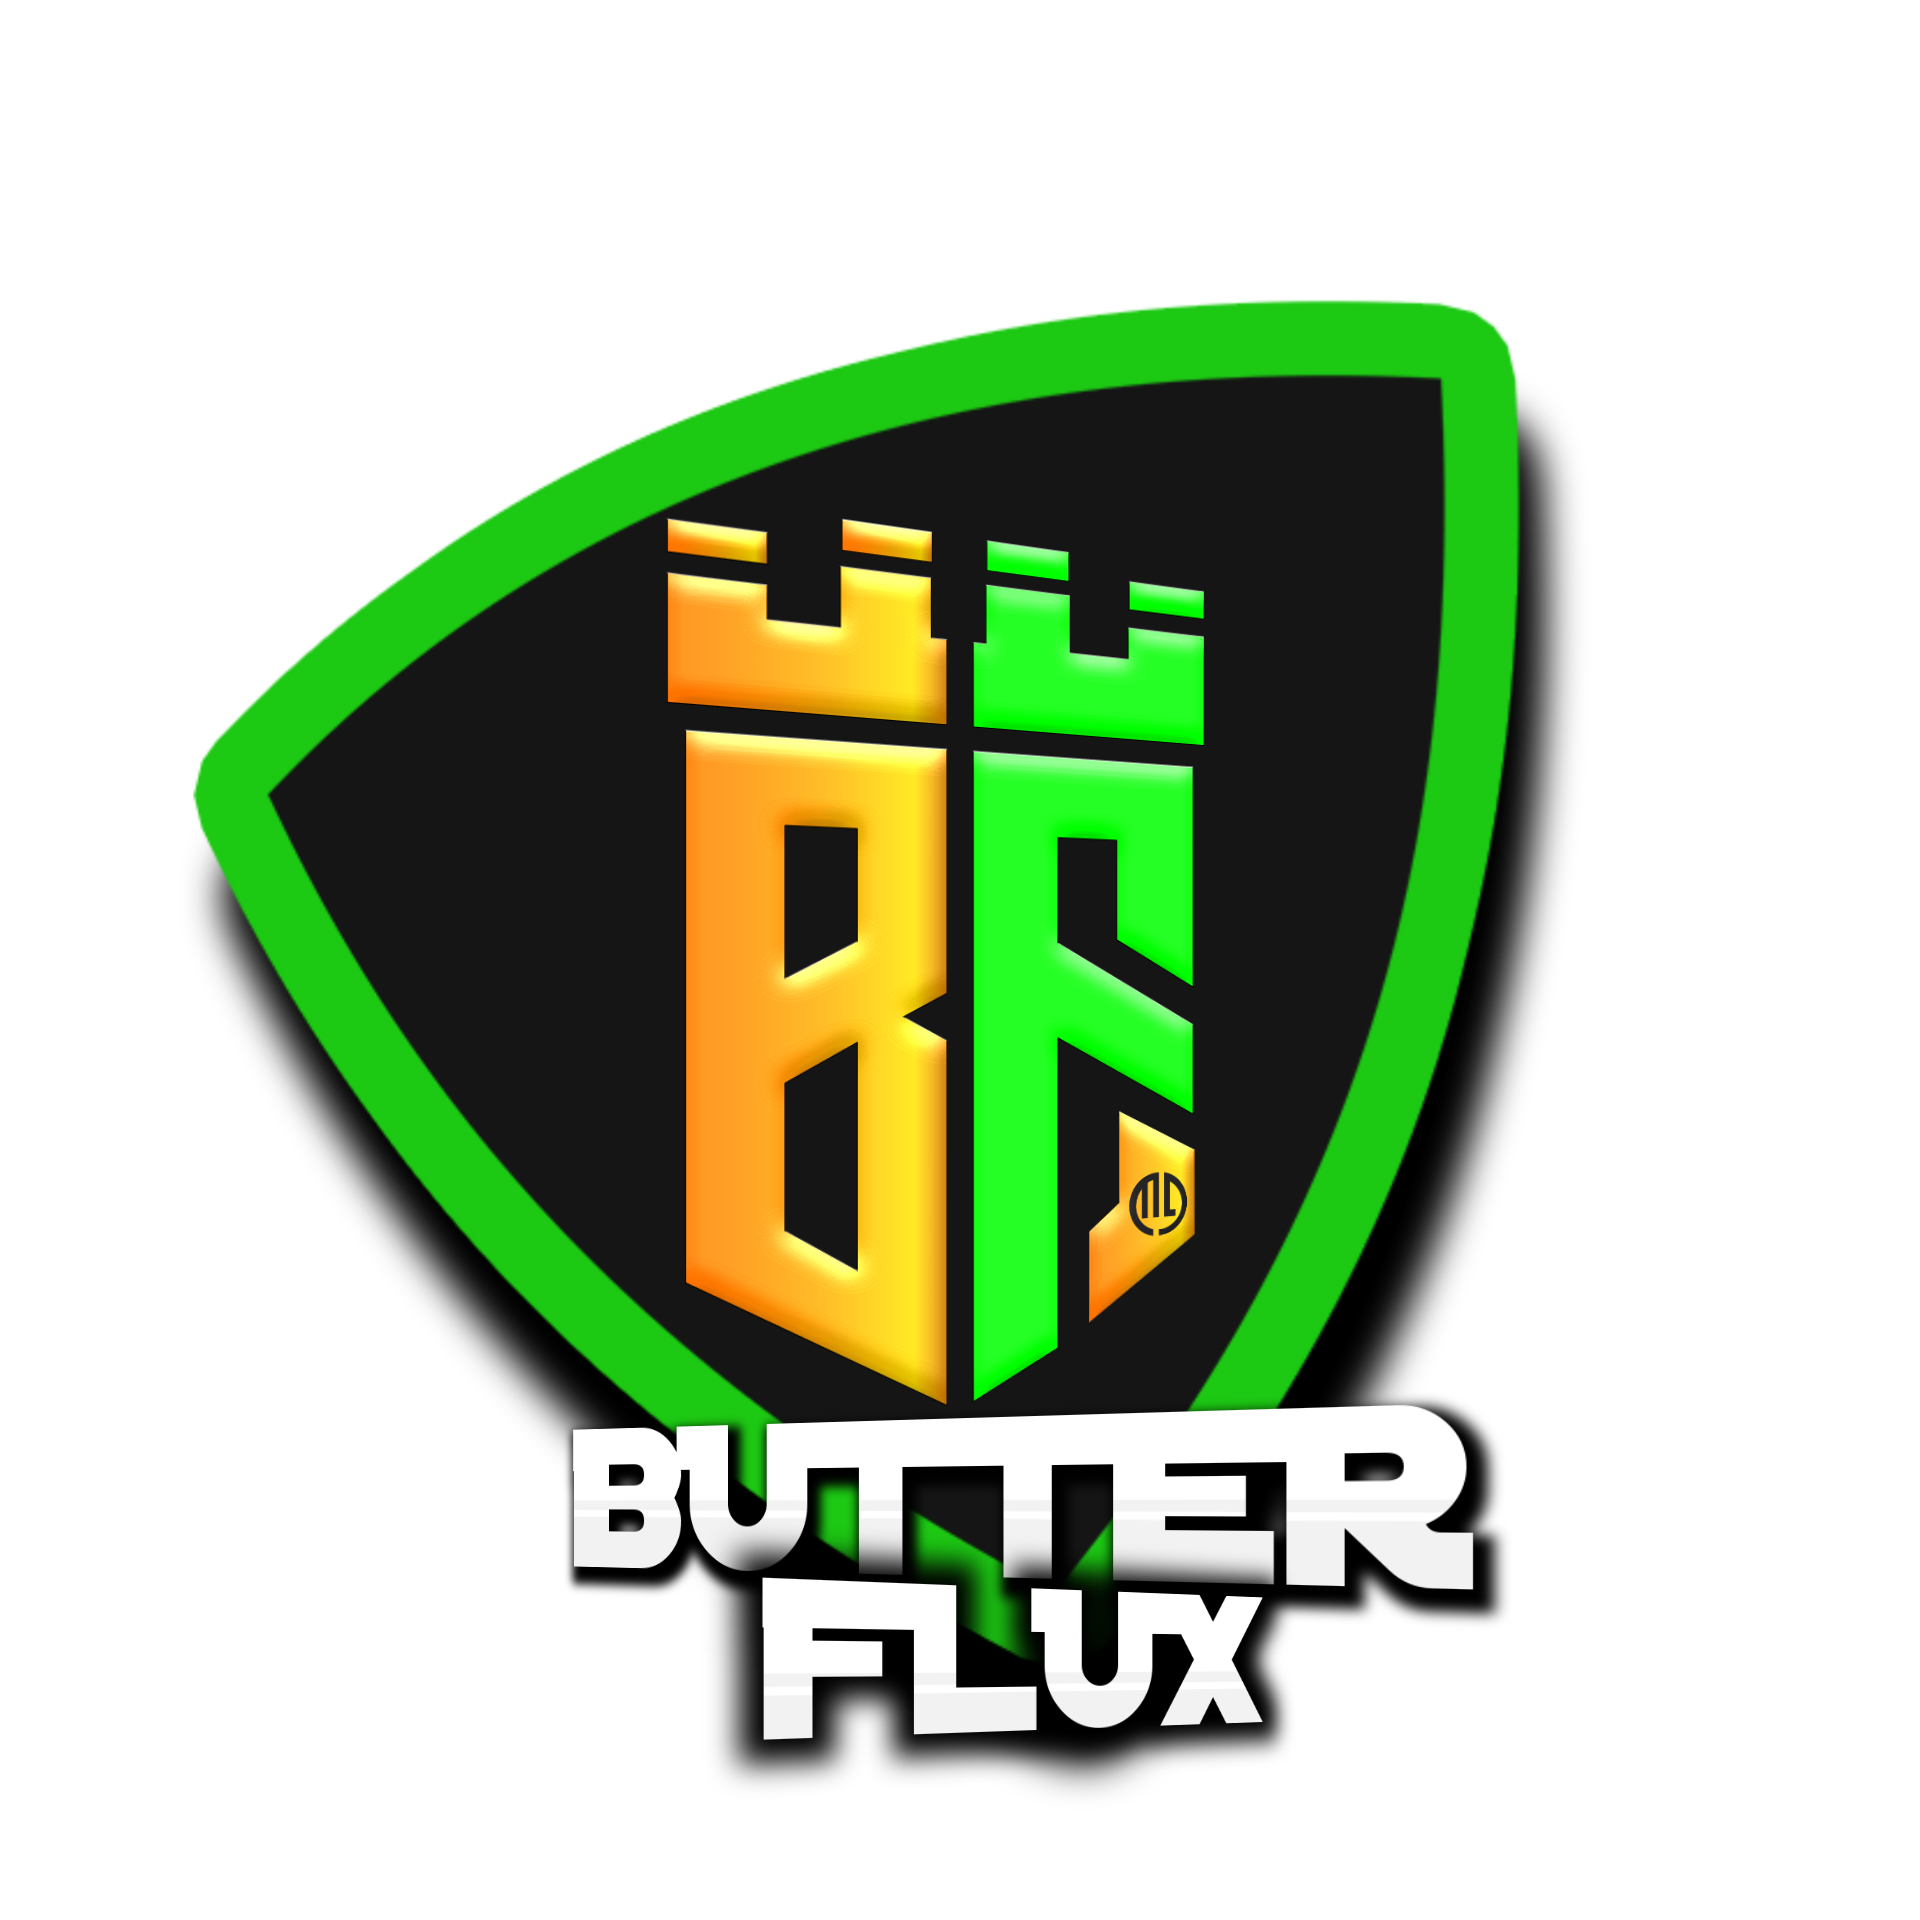 BUTTER FLUX